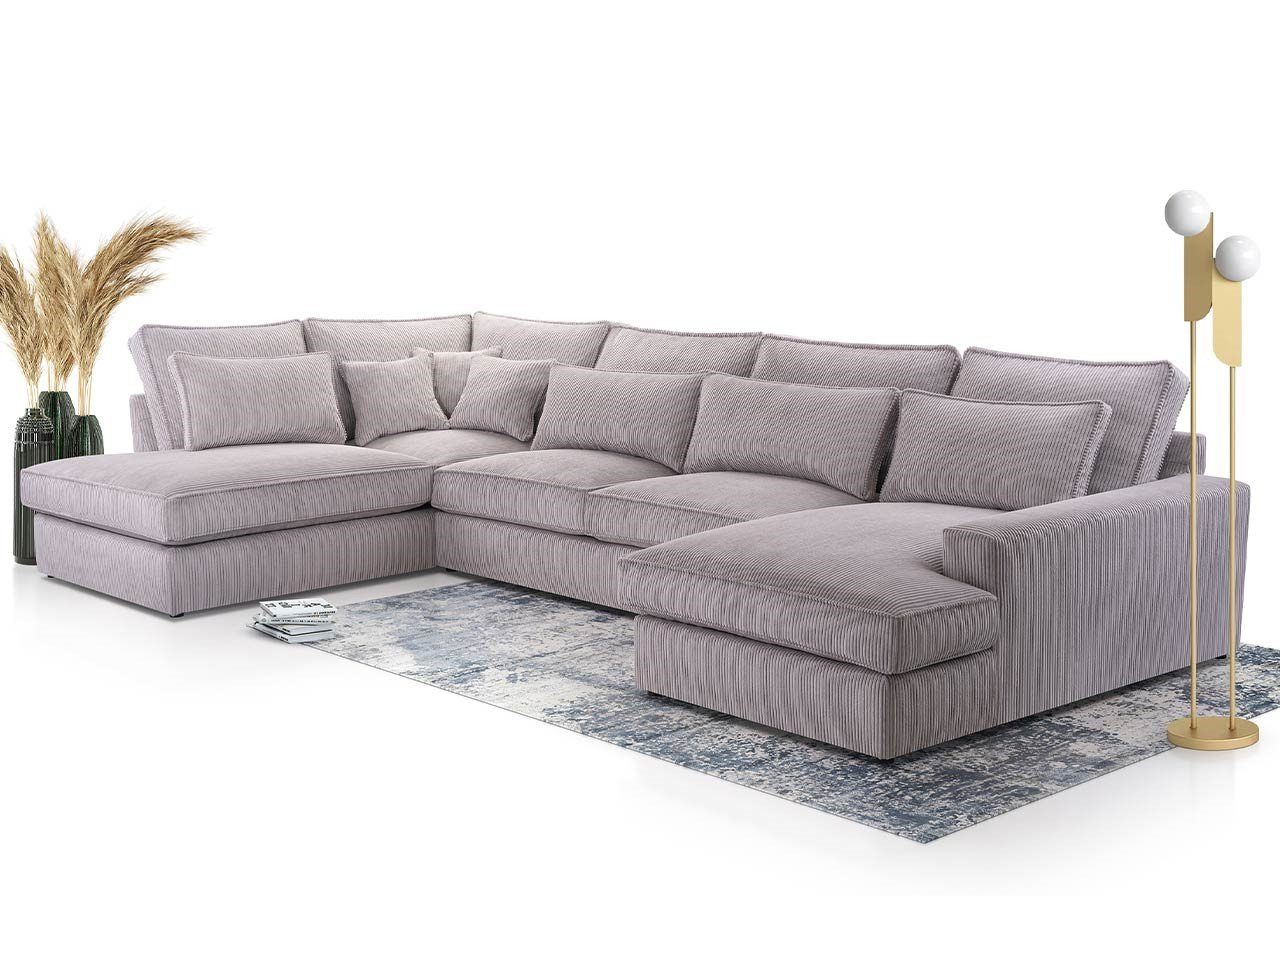 MKS MÖBEL Ecksofa CANES U, U - Form Couch, lose Kissen, modern Design Grau Lincoln